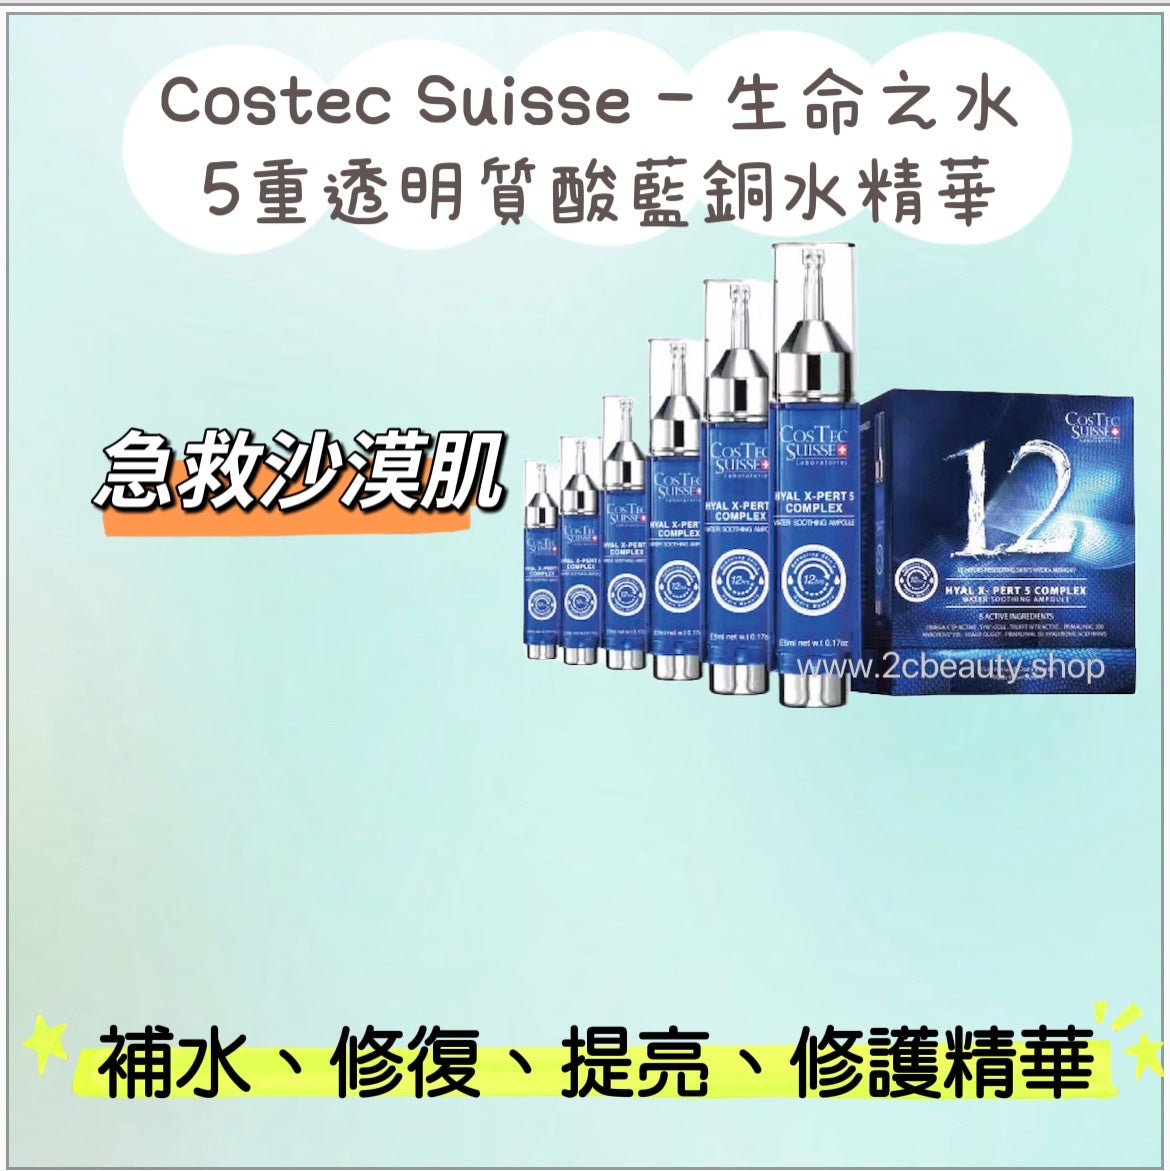 Costec Suisse 生命之水 – 5重透明質酸藍銅水精華